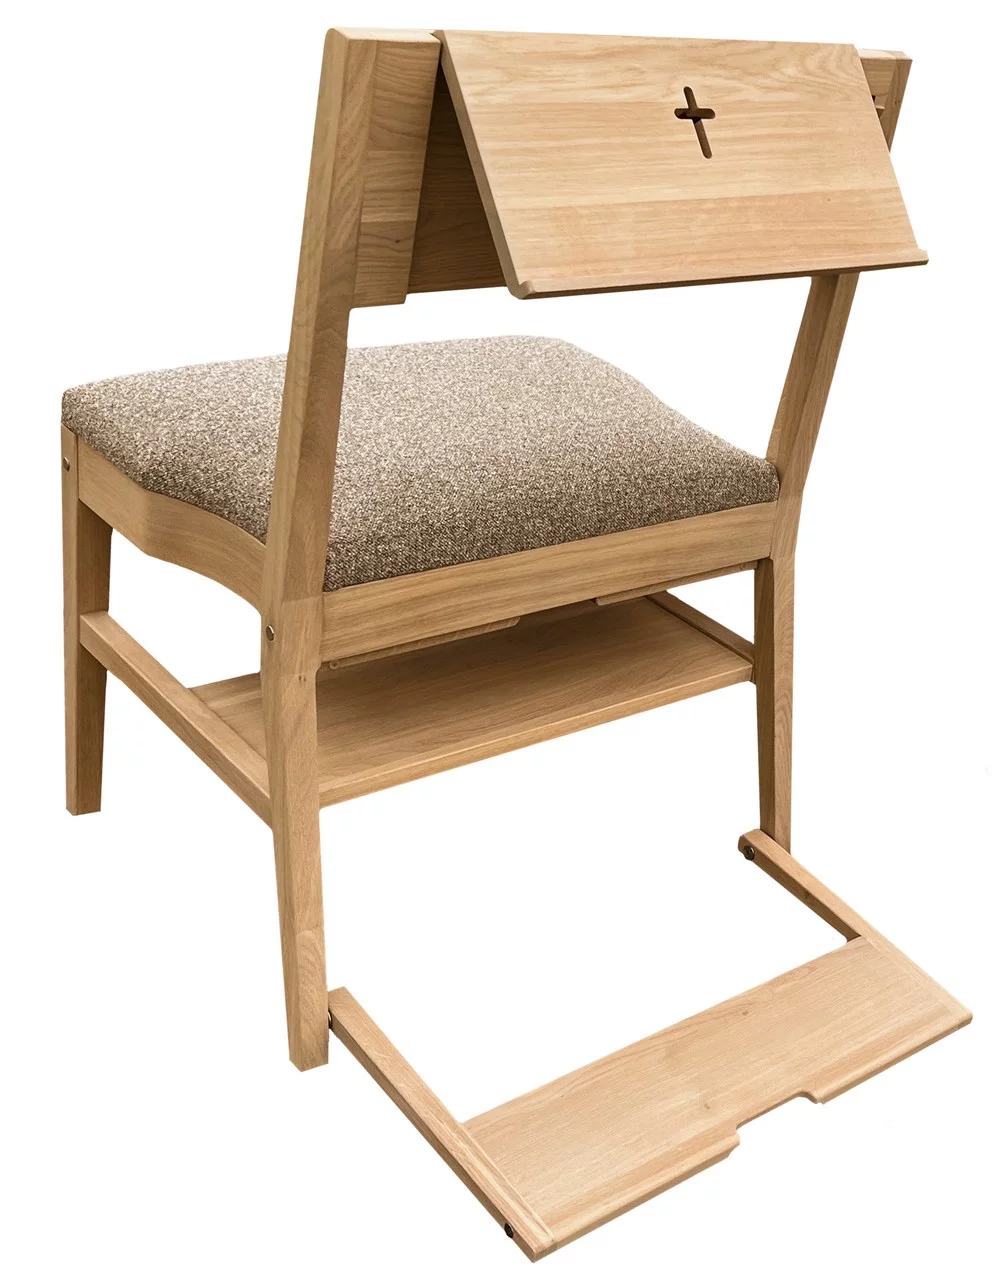 Hrastova crkvena stolica ZOE s kompletnom ponudom dodataka — govornica, kuka, klecalo, sustav spajanja, polica ispod sjedala i presvlake sjedala